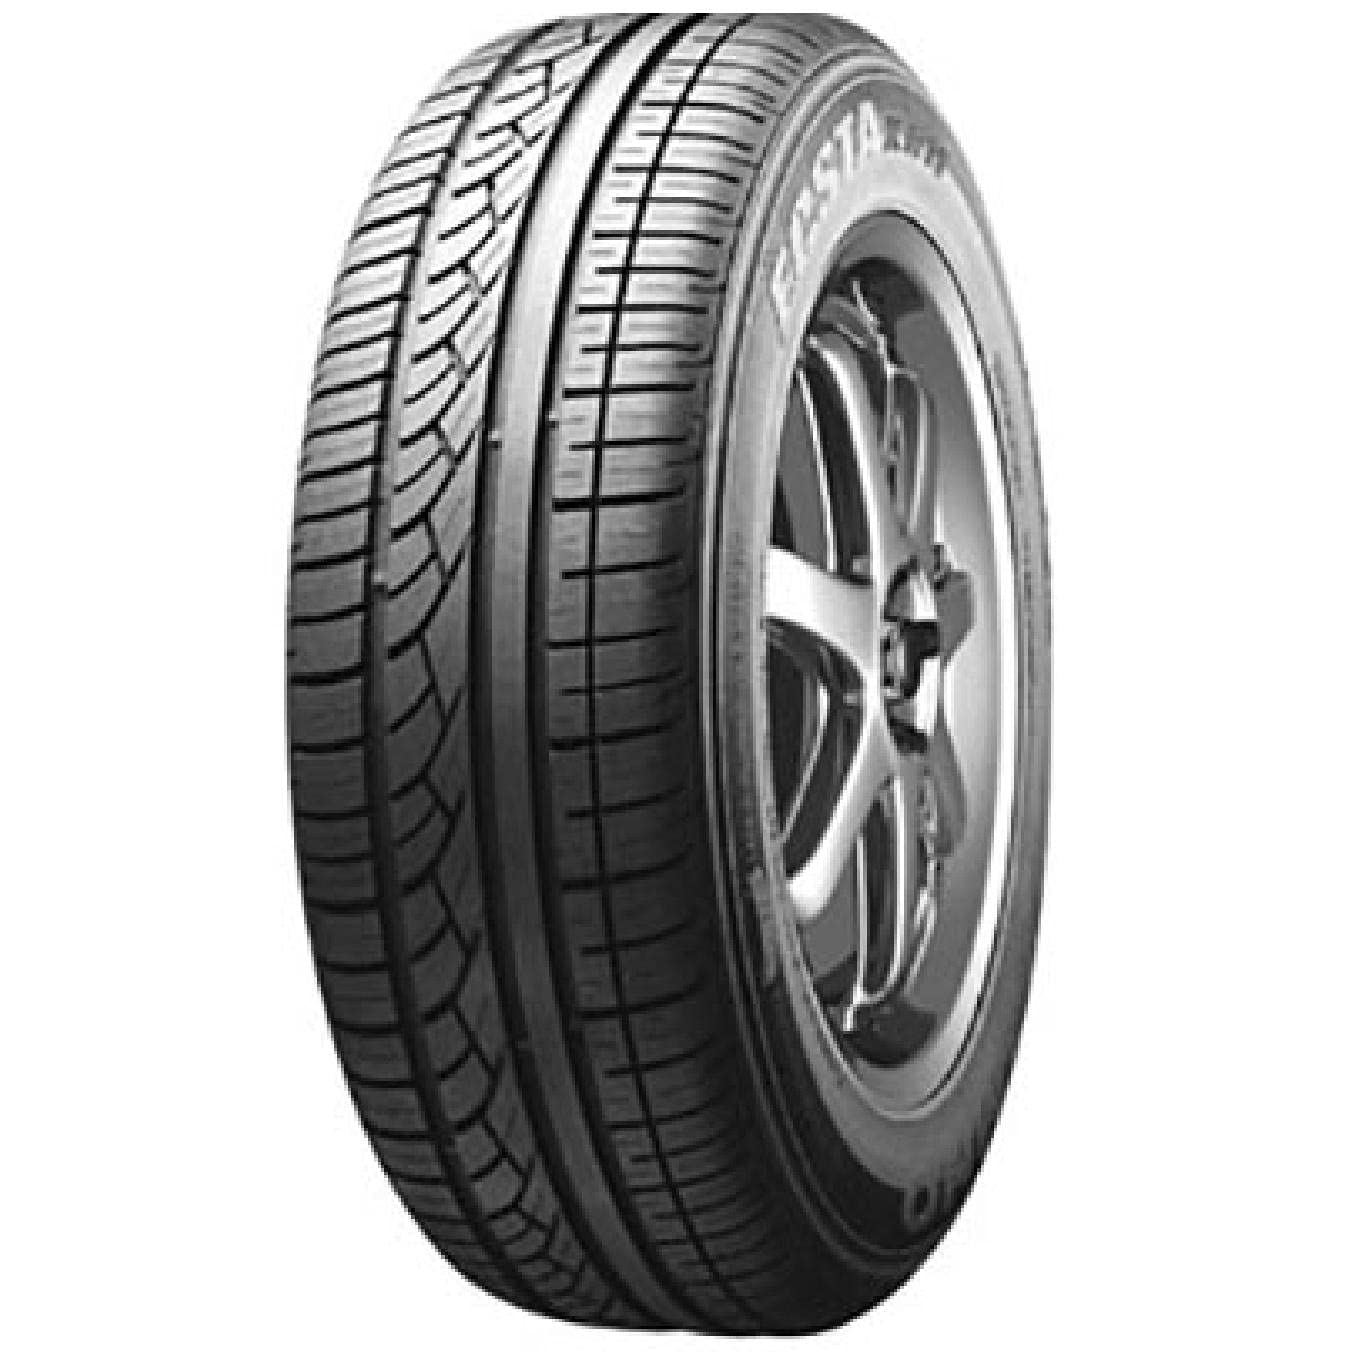 Kumho - Ecsta Kh11-215/55R18 95H - Summer Tyre (Car) - E/C/73 von Kumho